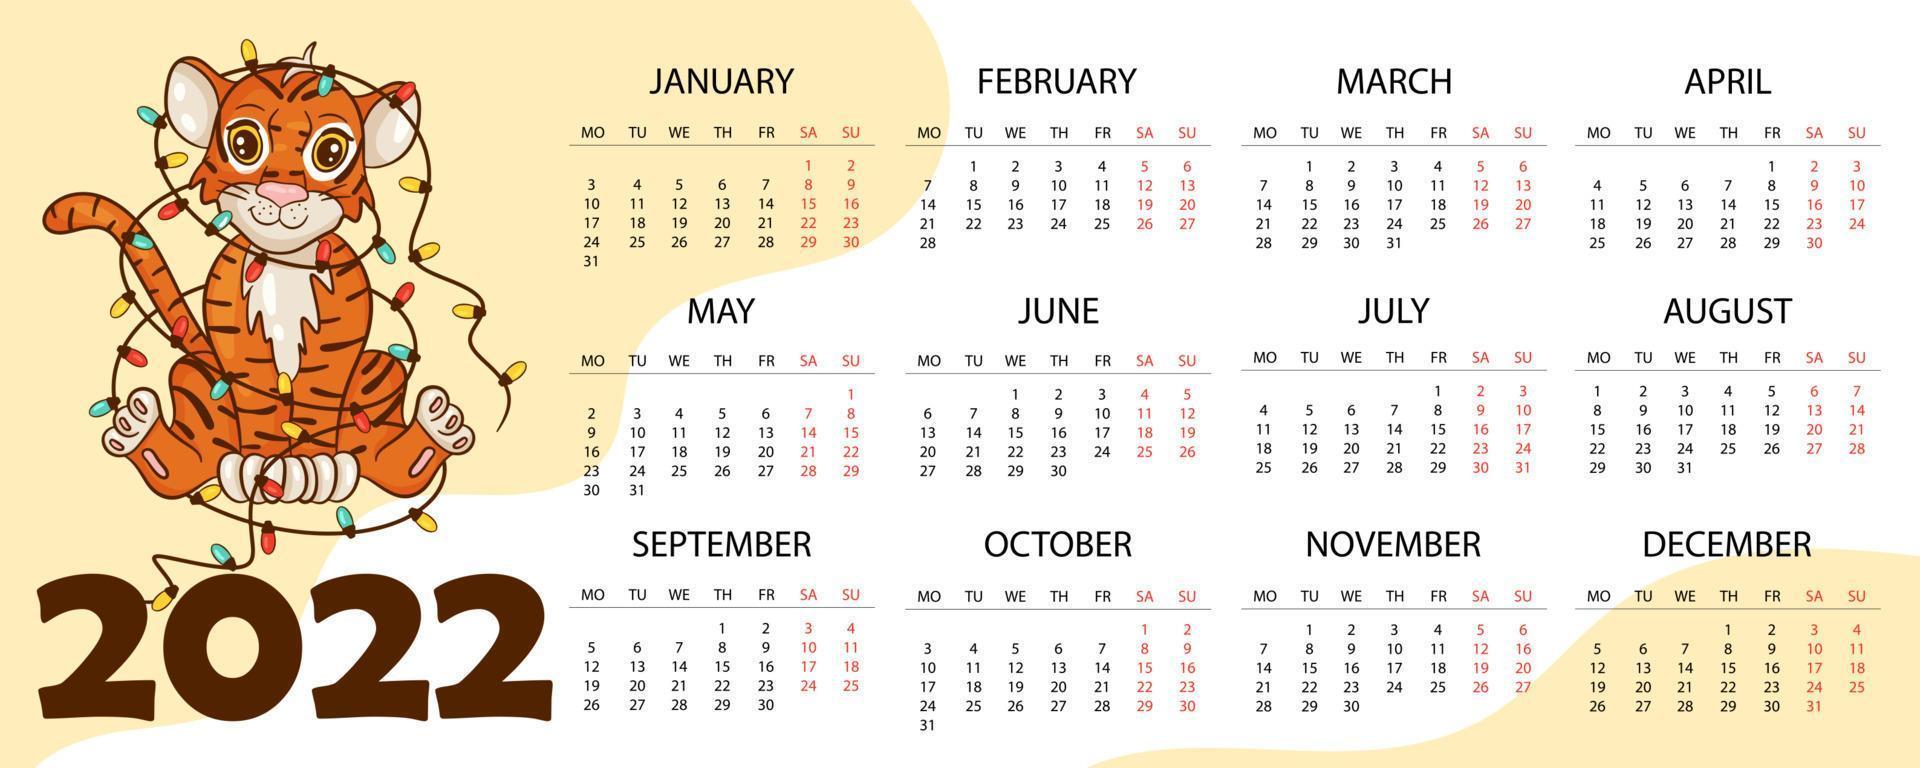 plantilla de diseño de calendario para 2022, el año del tigre según el calendario chino o oriental, con una ilustración del tigre. tabla horizontal con calendario para 2022. vector